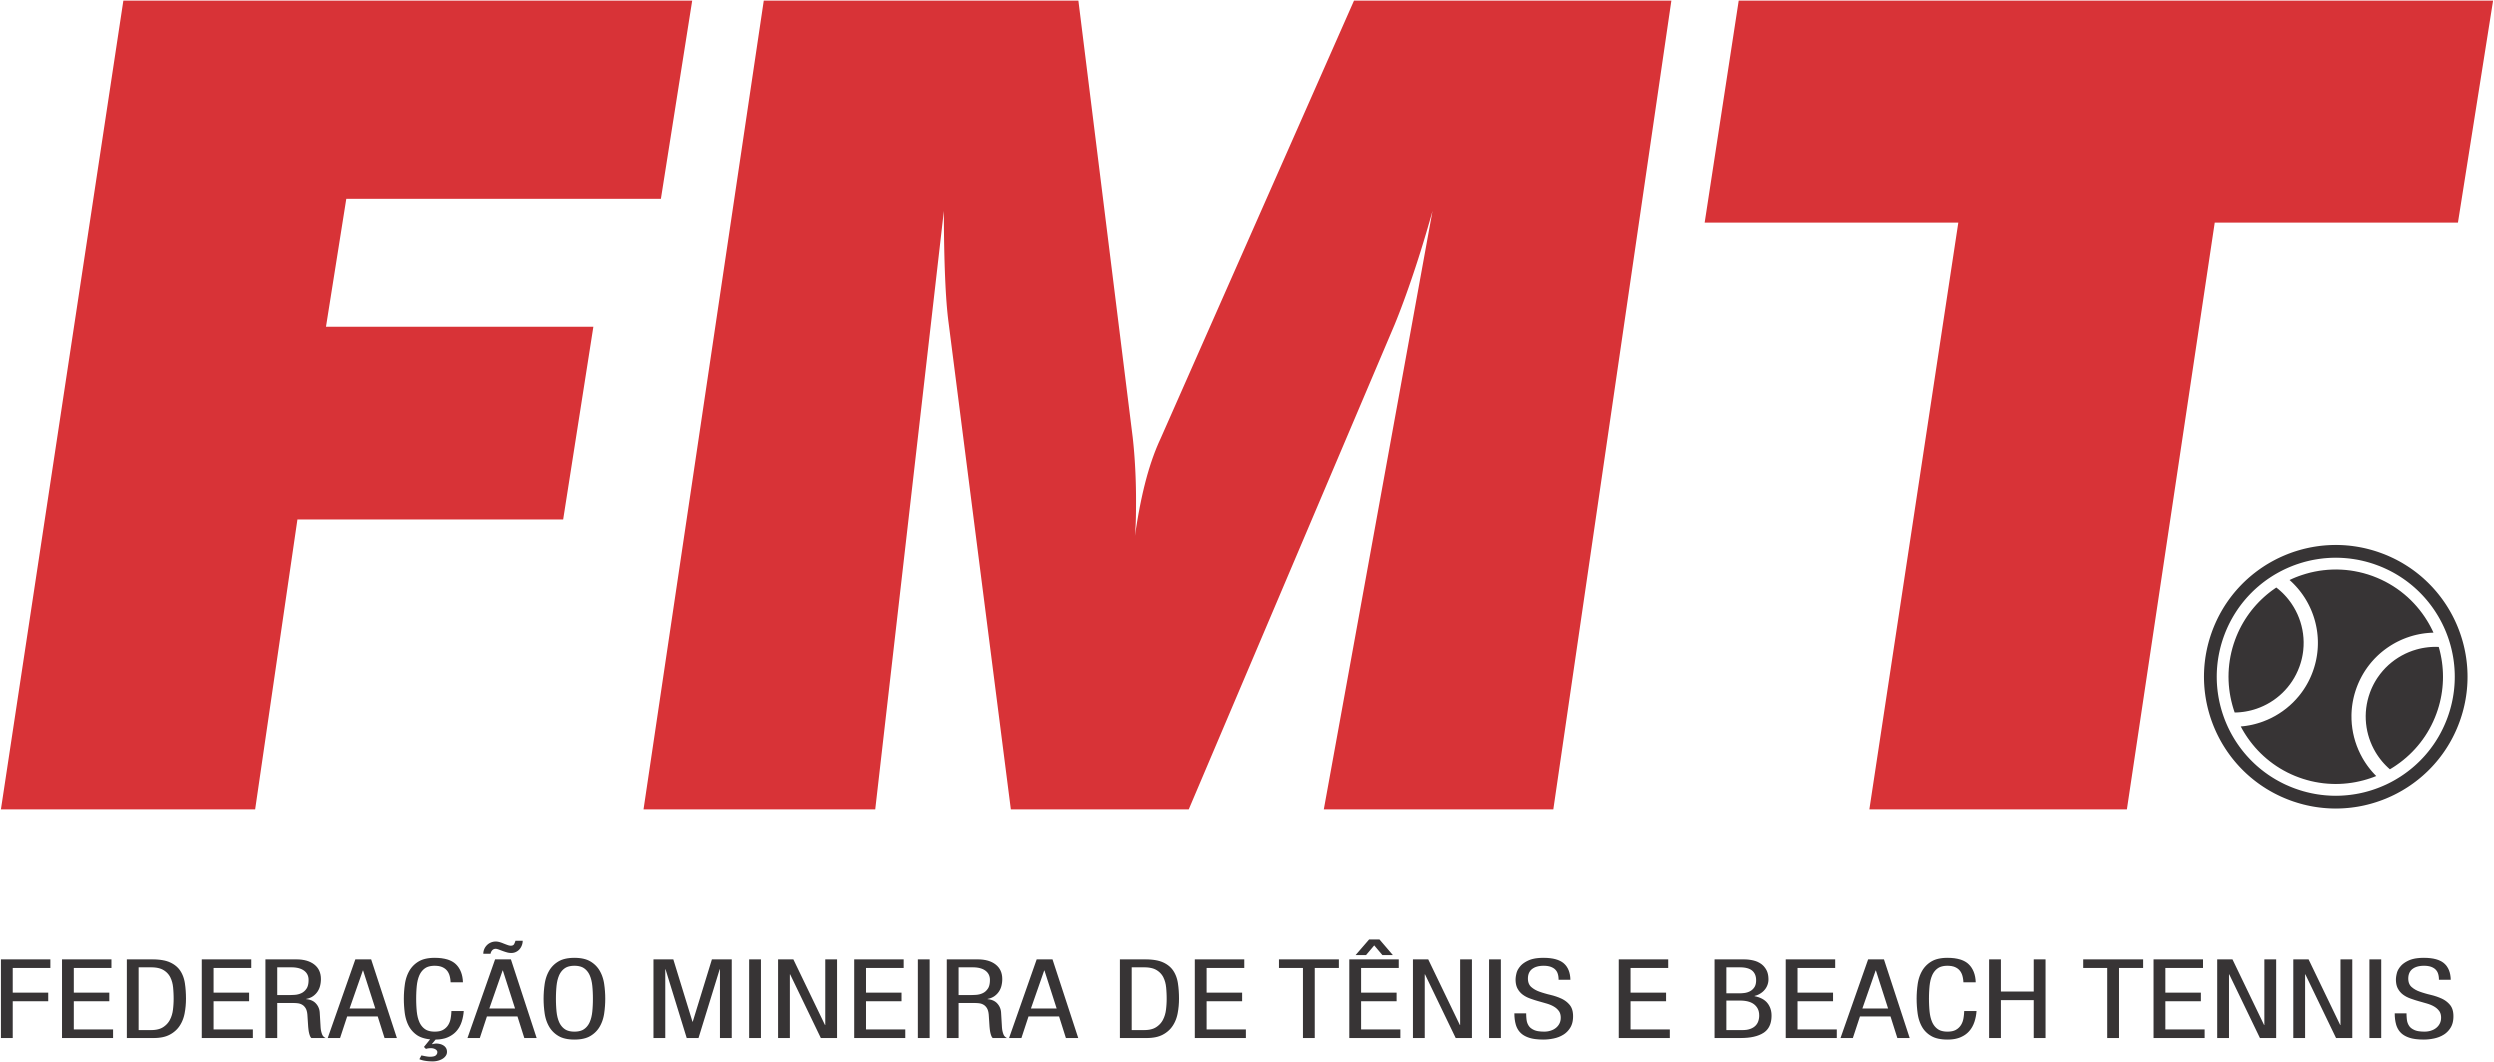 Federação Mineira de Tênis e Beach Tennis